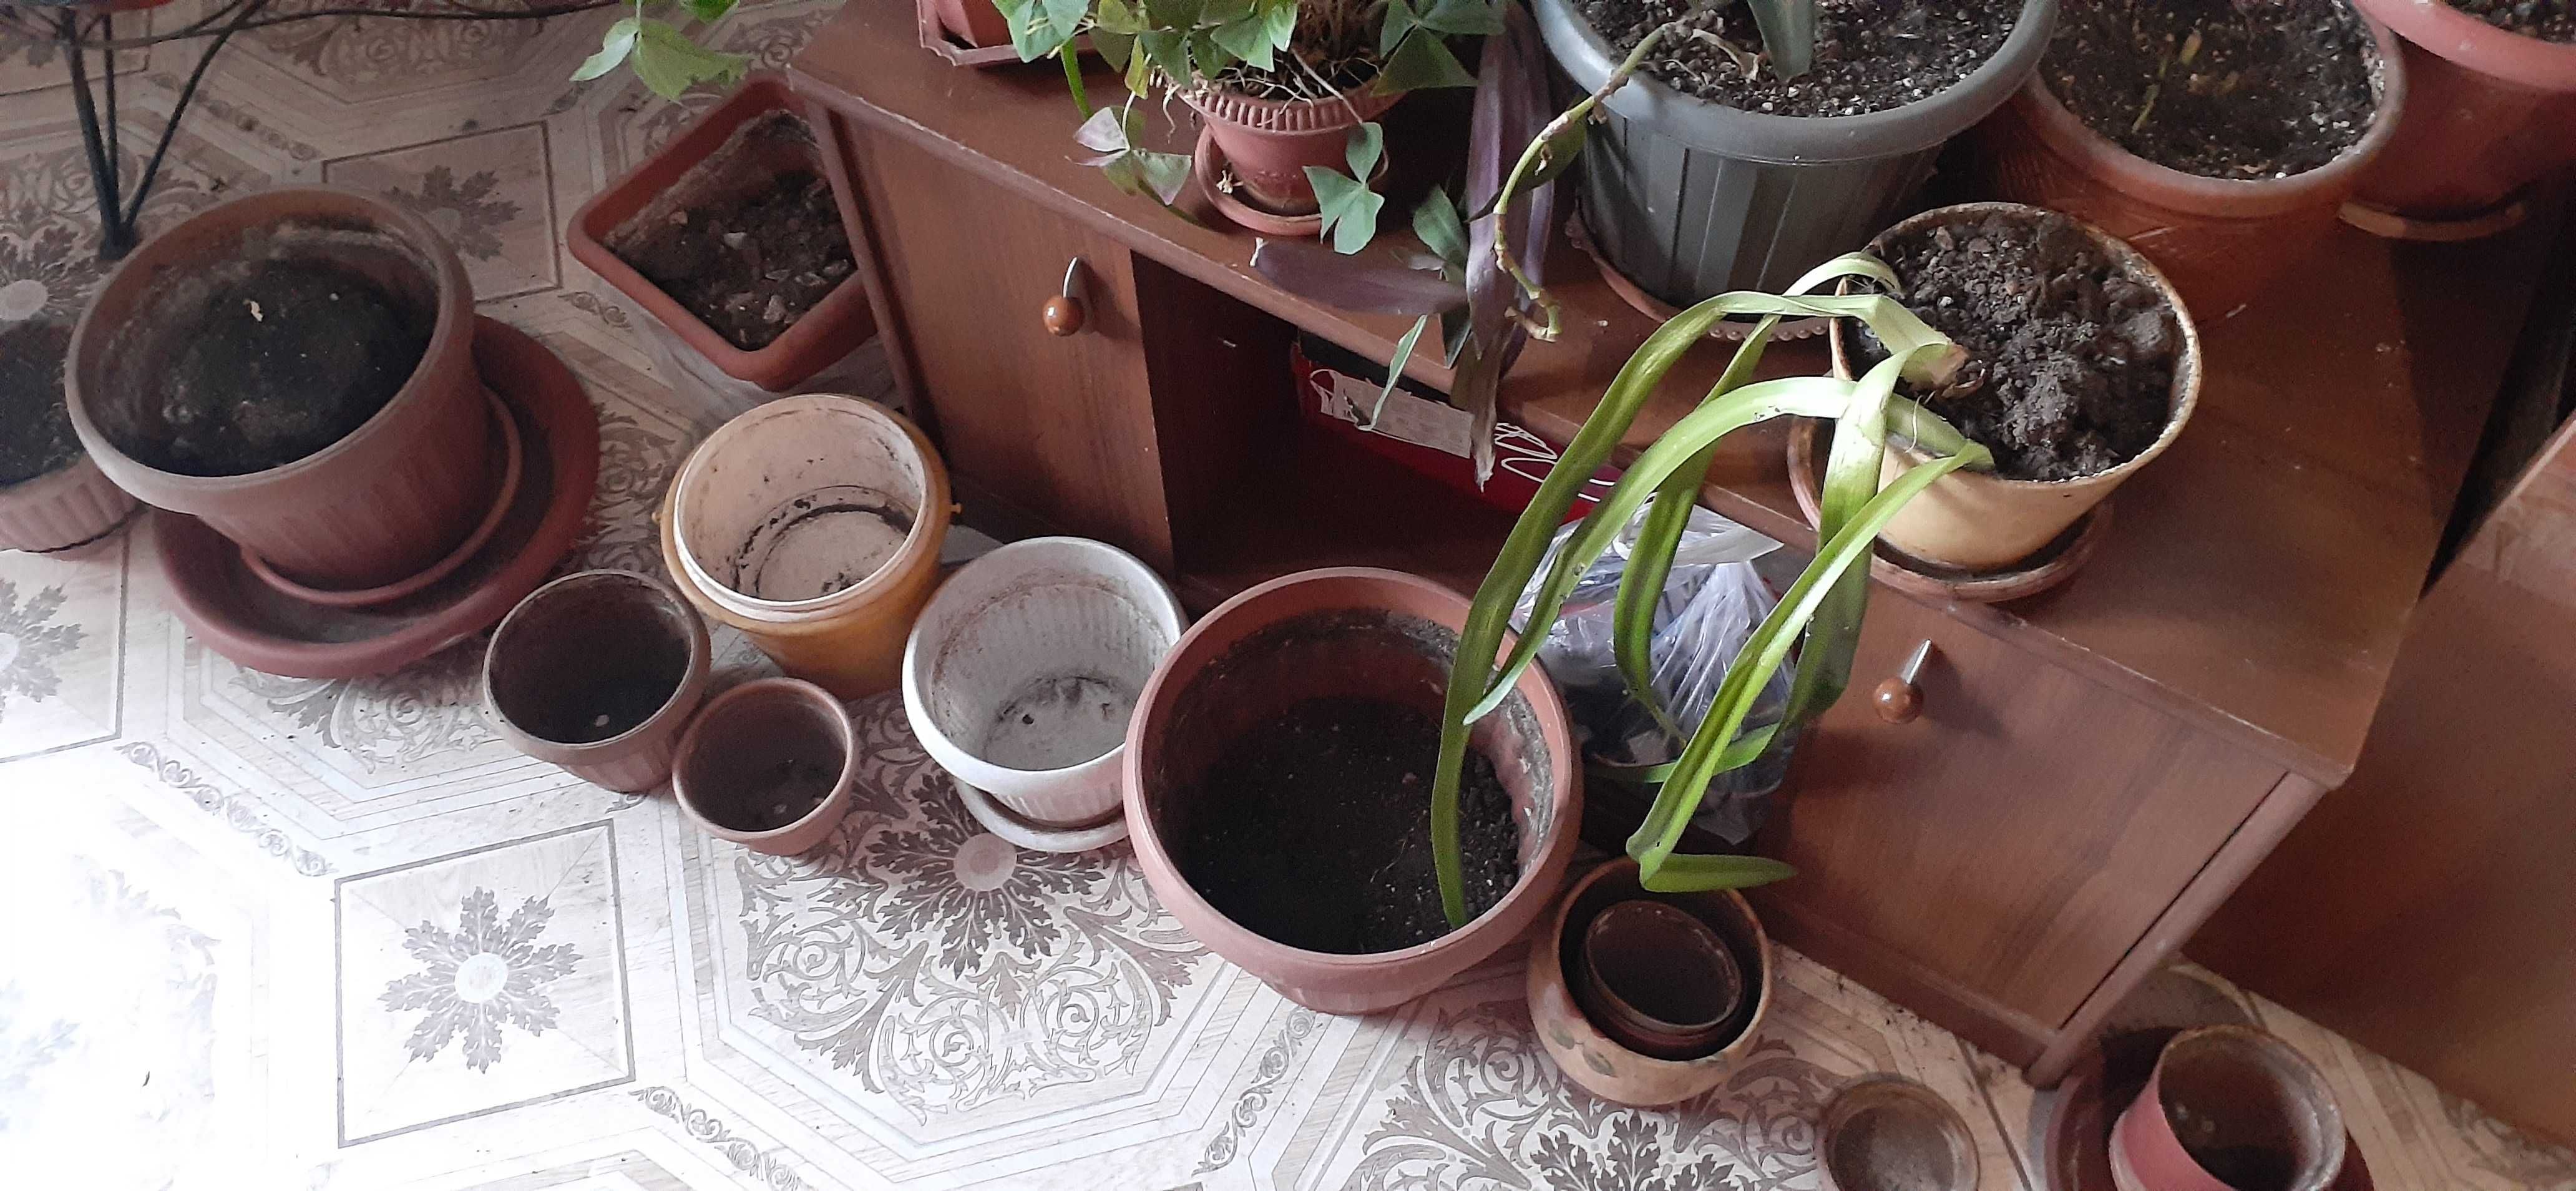 Горшки для комнатных растений